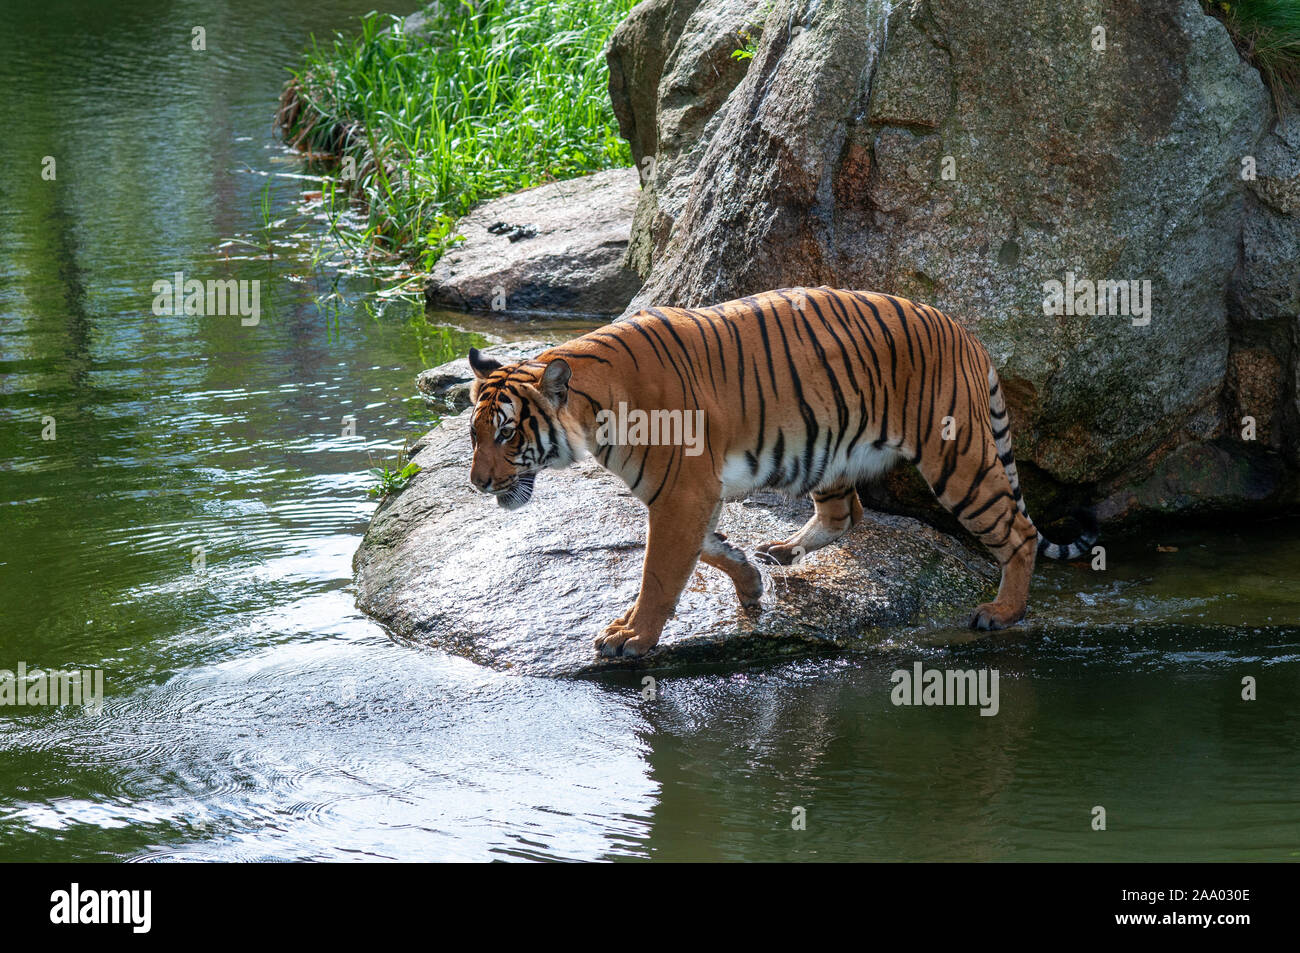 Tigers in Berlin Zoo / Zoological Garden in Berlin, Germany Stock Photo